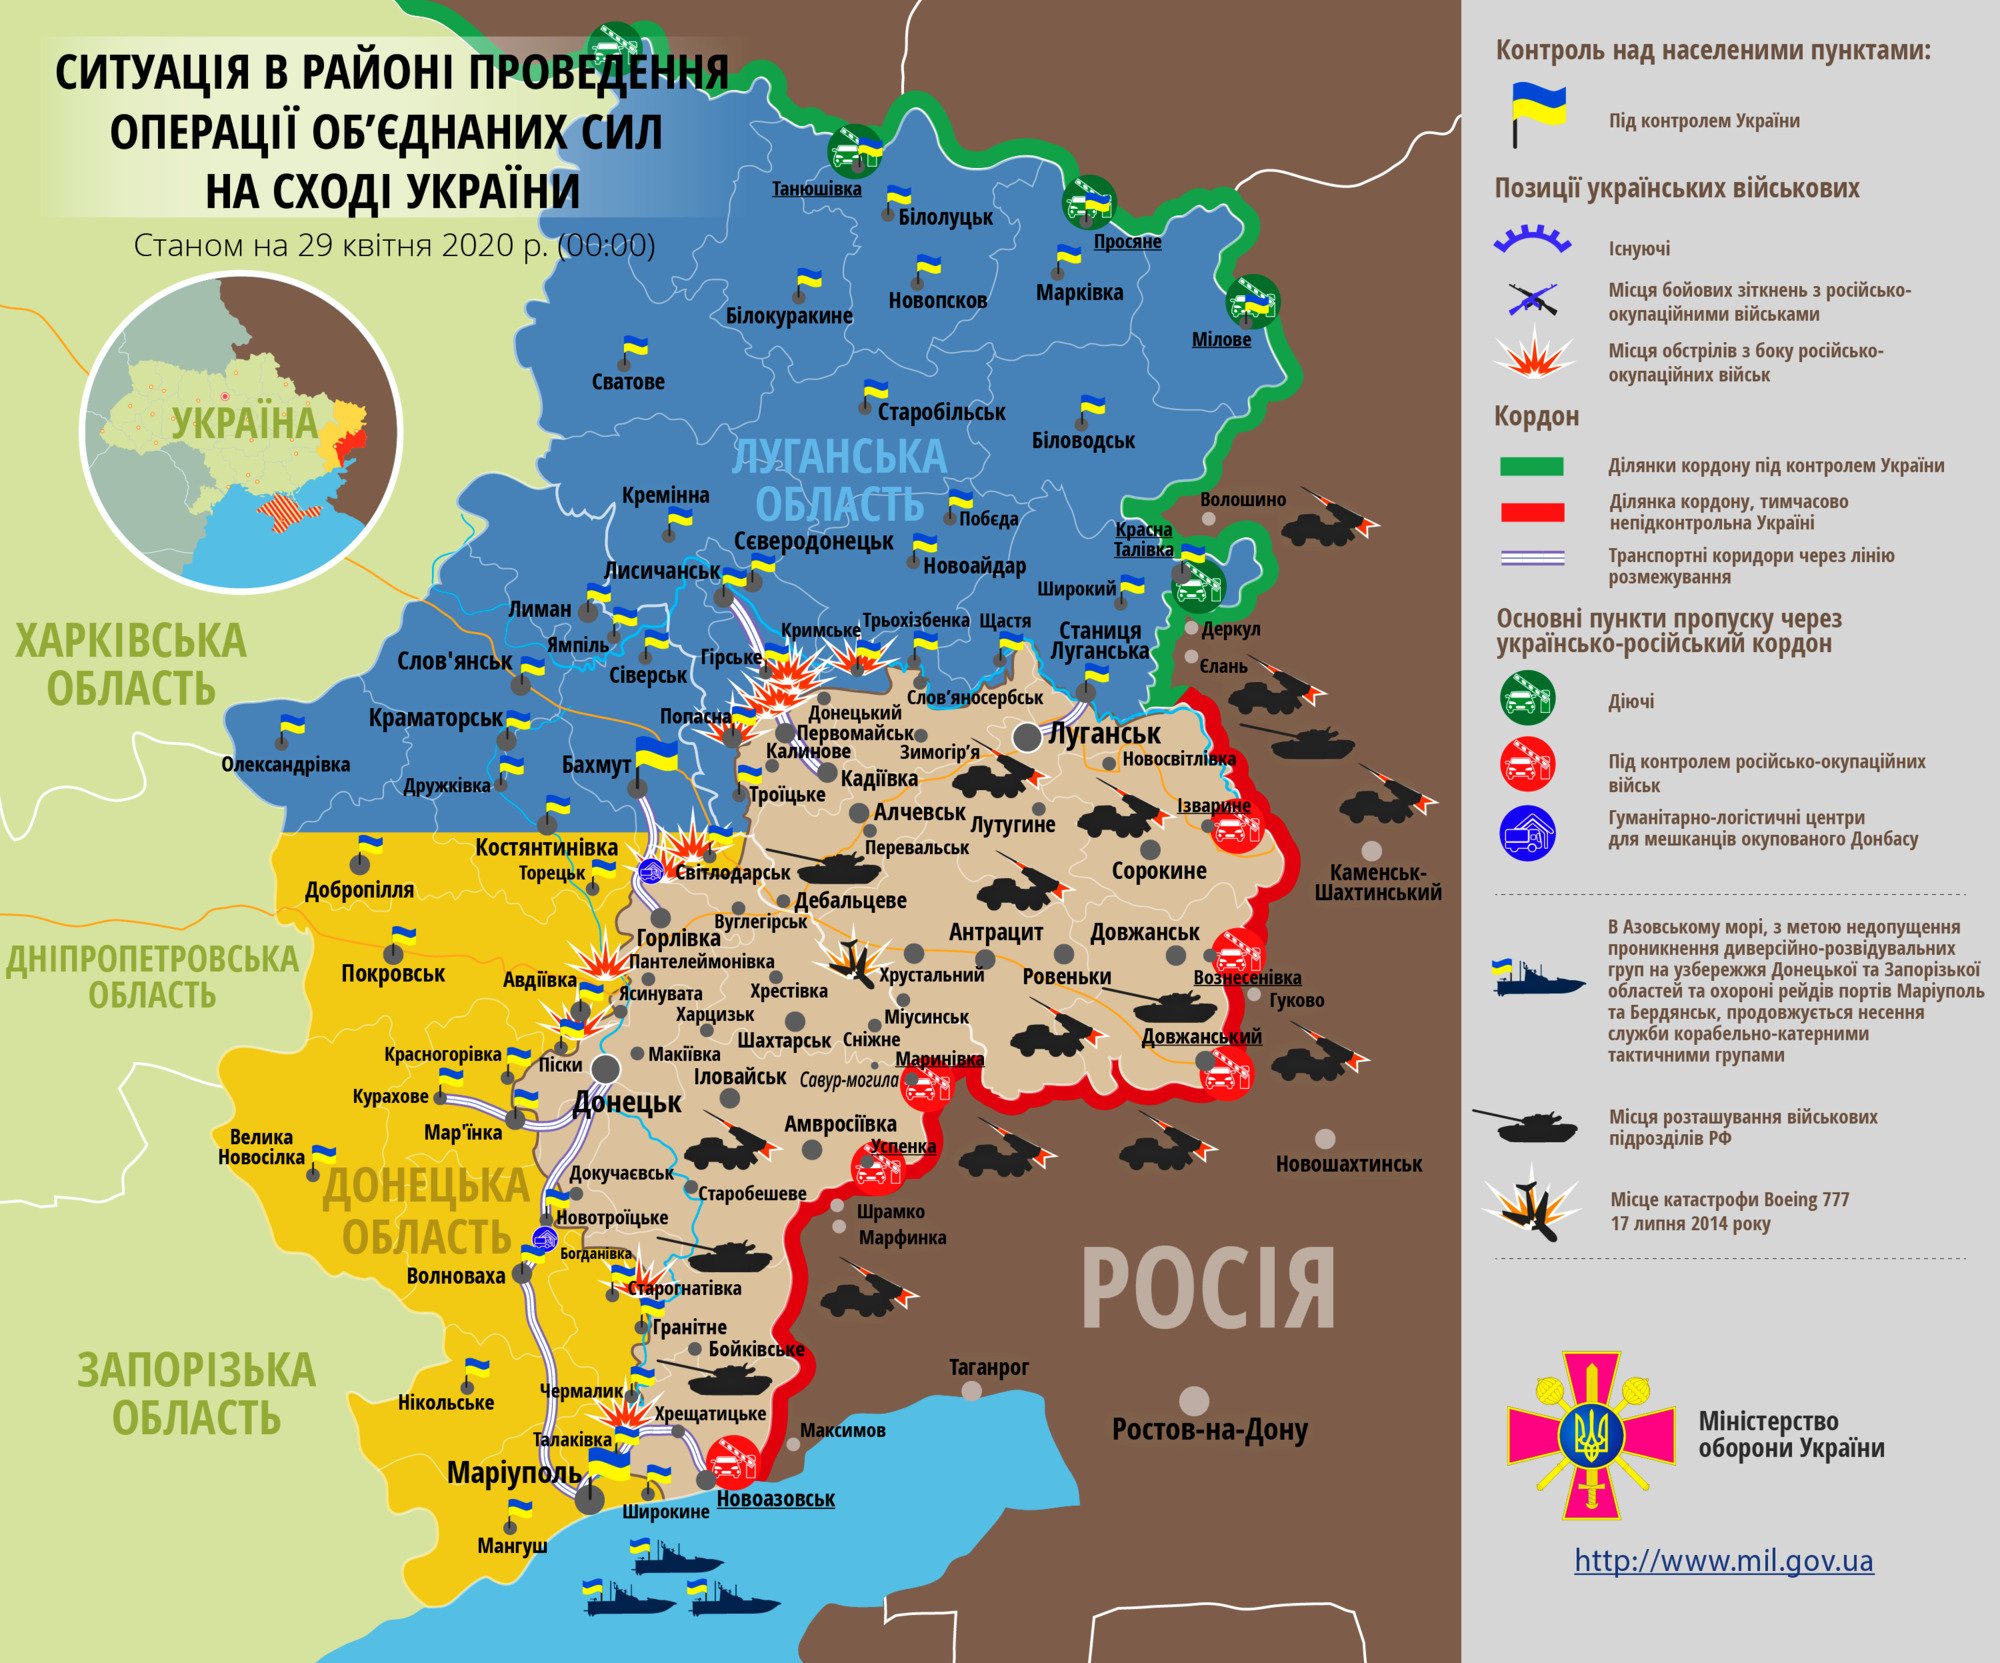 Ситуація в зоні проведення ООС на Донбасі 29 квітня